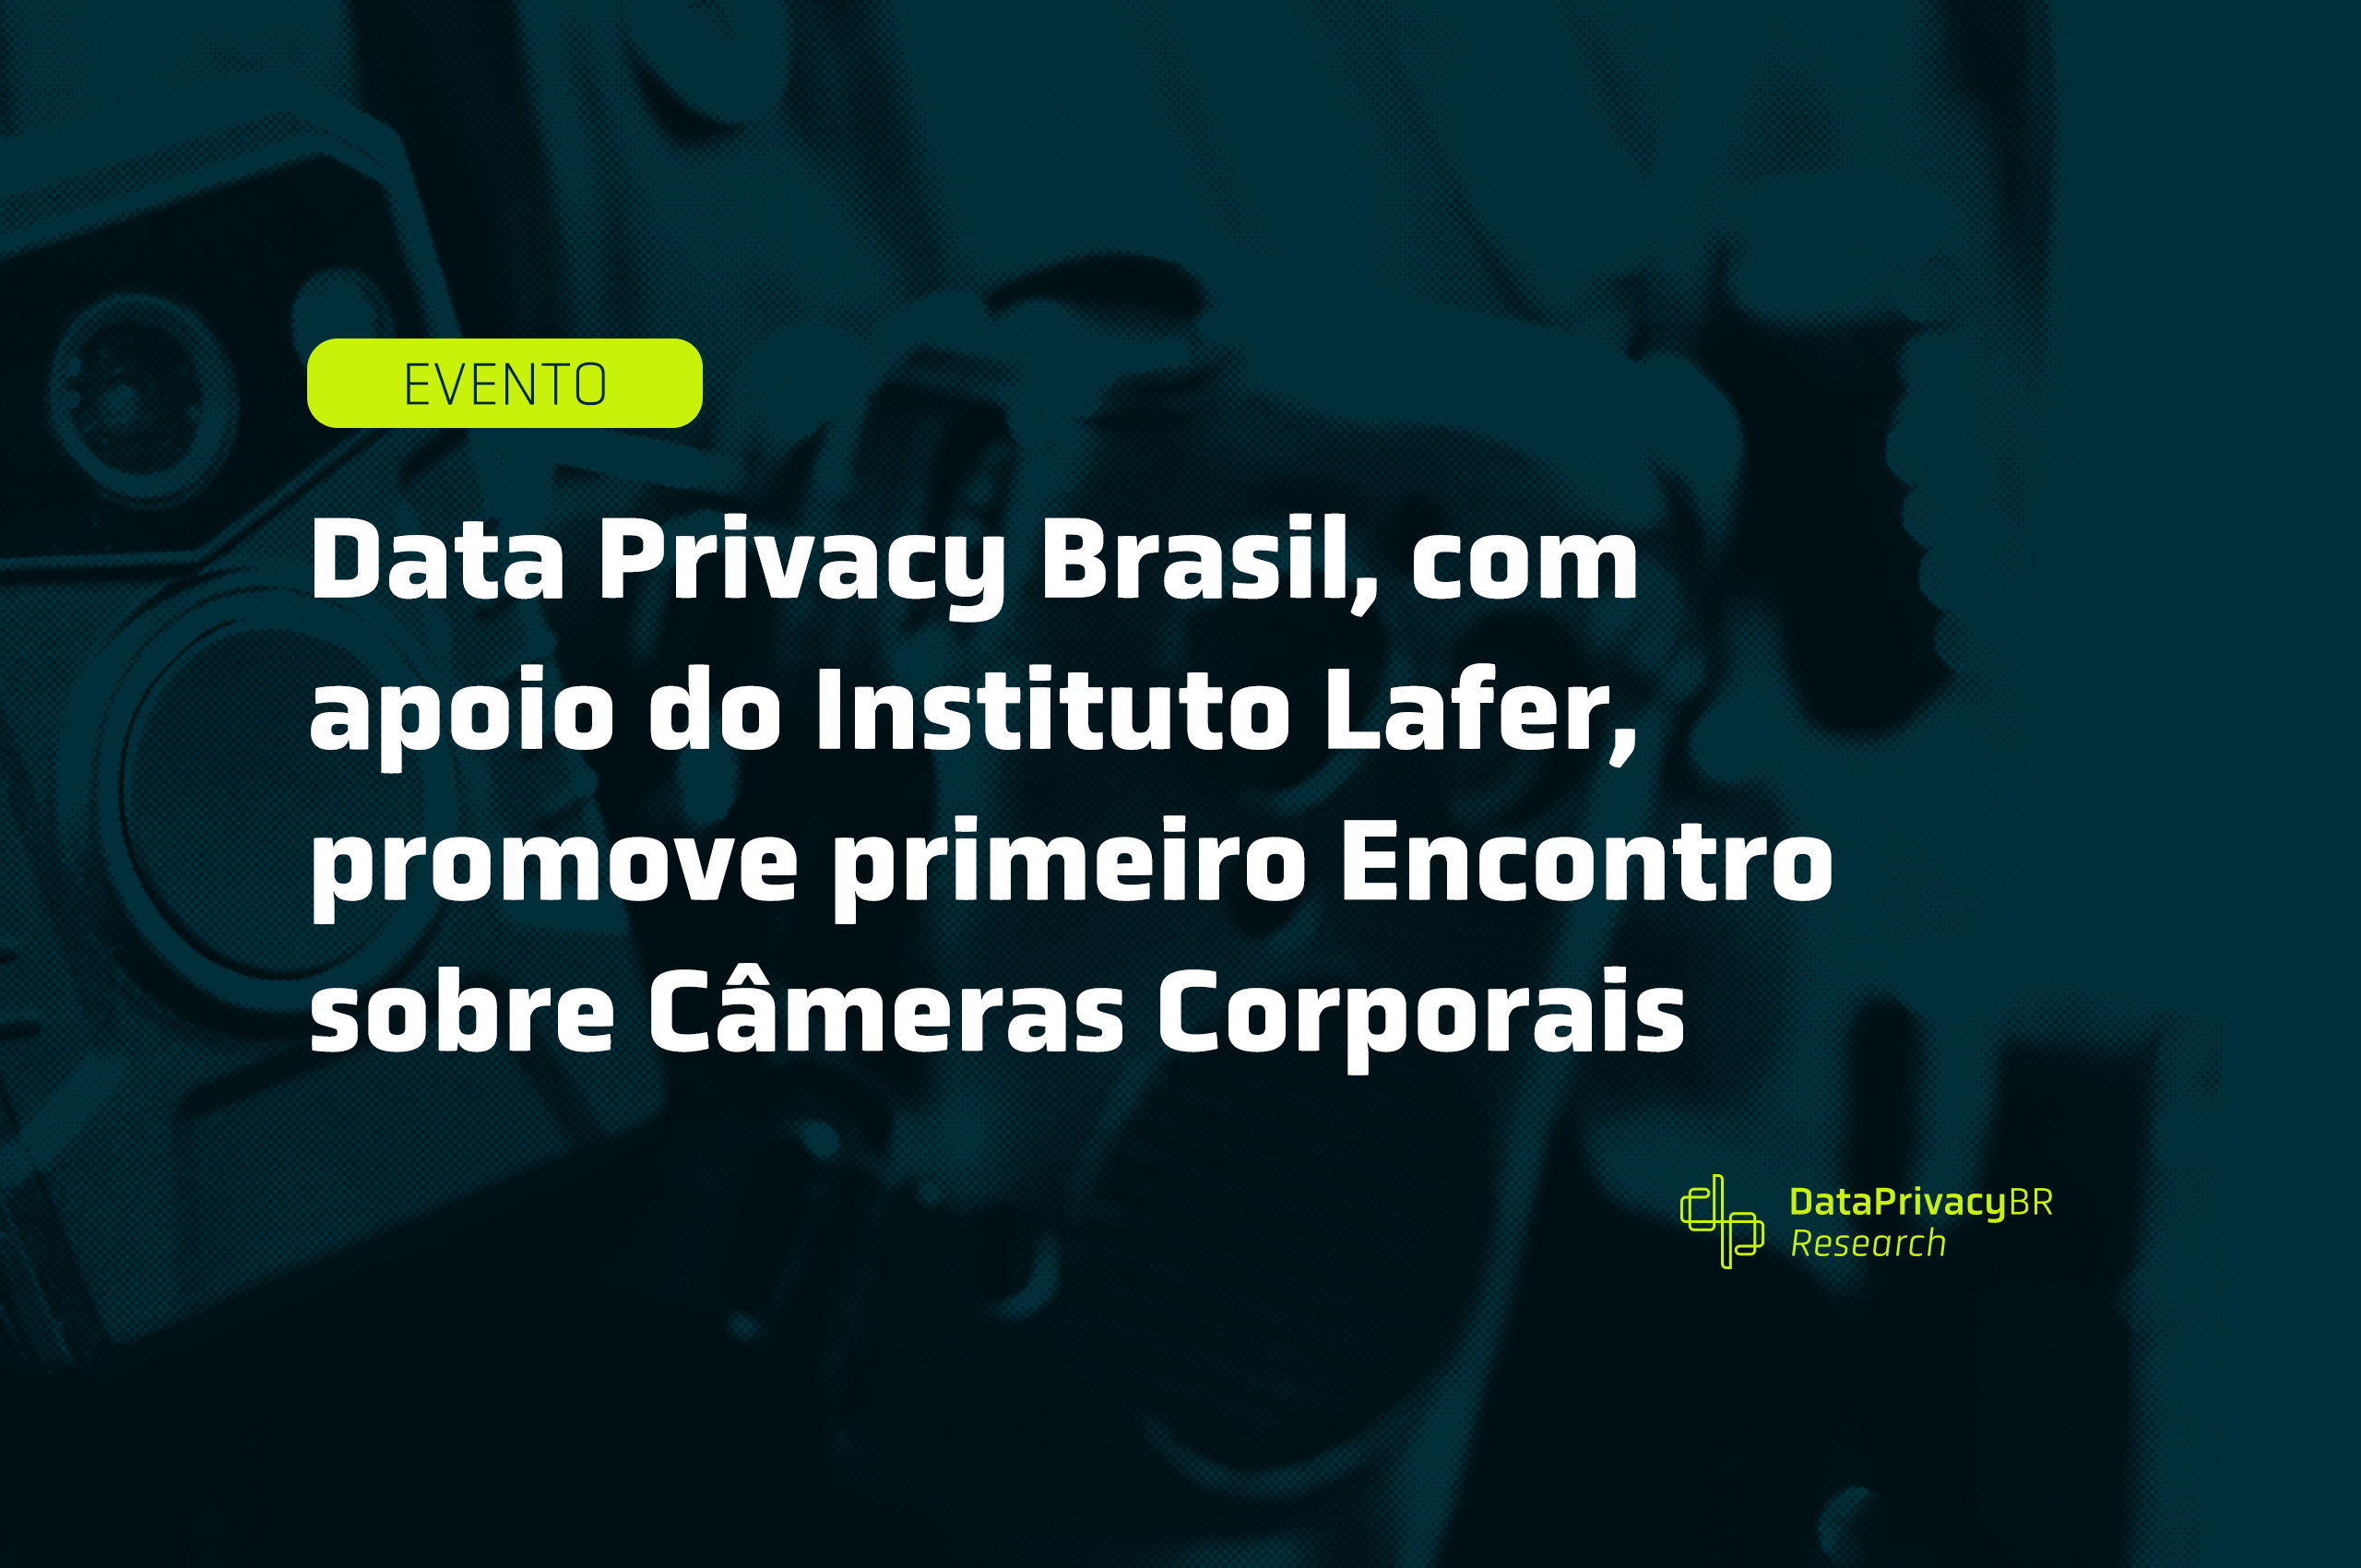 Data Privacy Brasil, com apoio do Instituto Lafer, promove primeiro Encontro sobre Câmeras Corporais